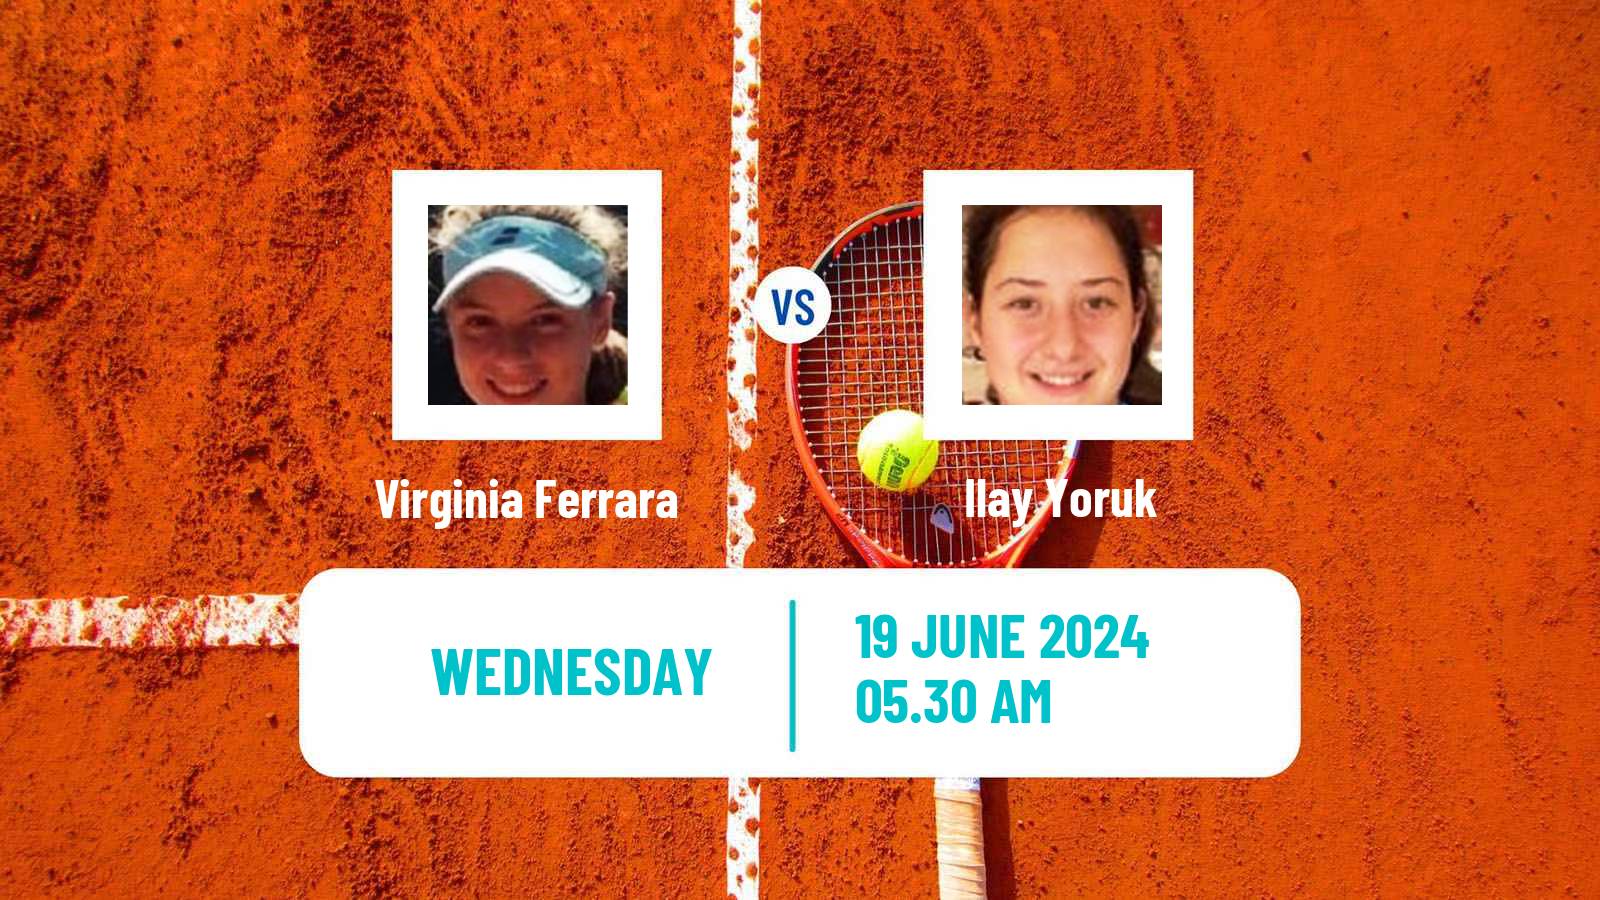 Tennis ITF W15 Bucharest 3 Women Virginia Ferrara - Ilay Yoruk